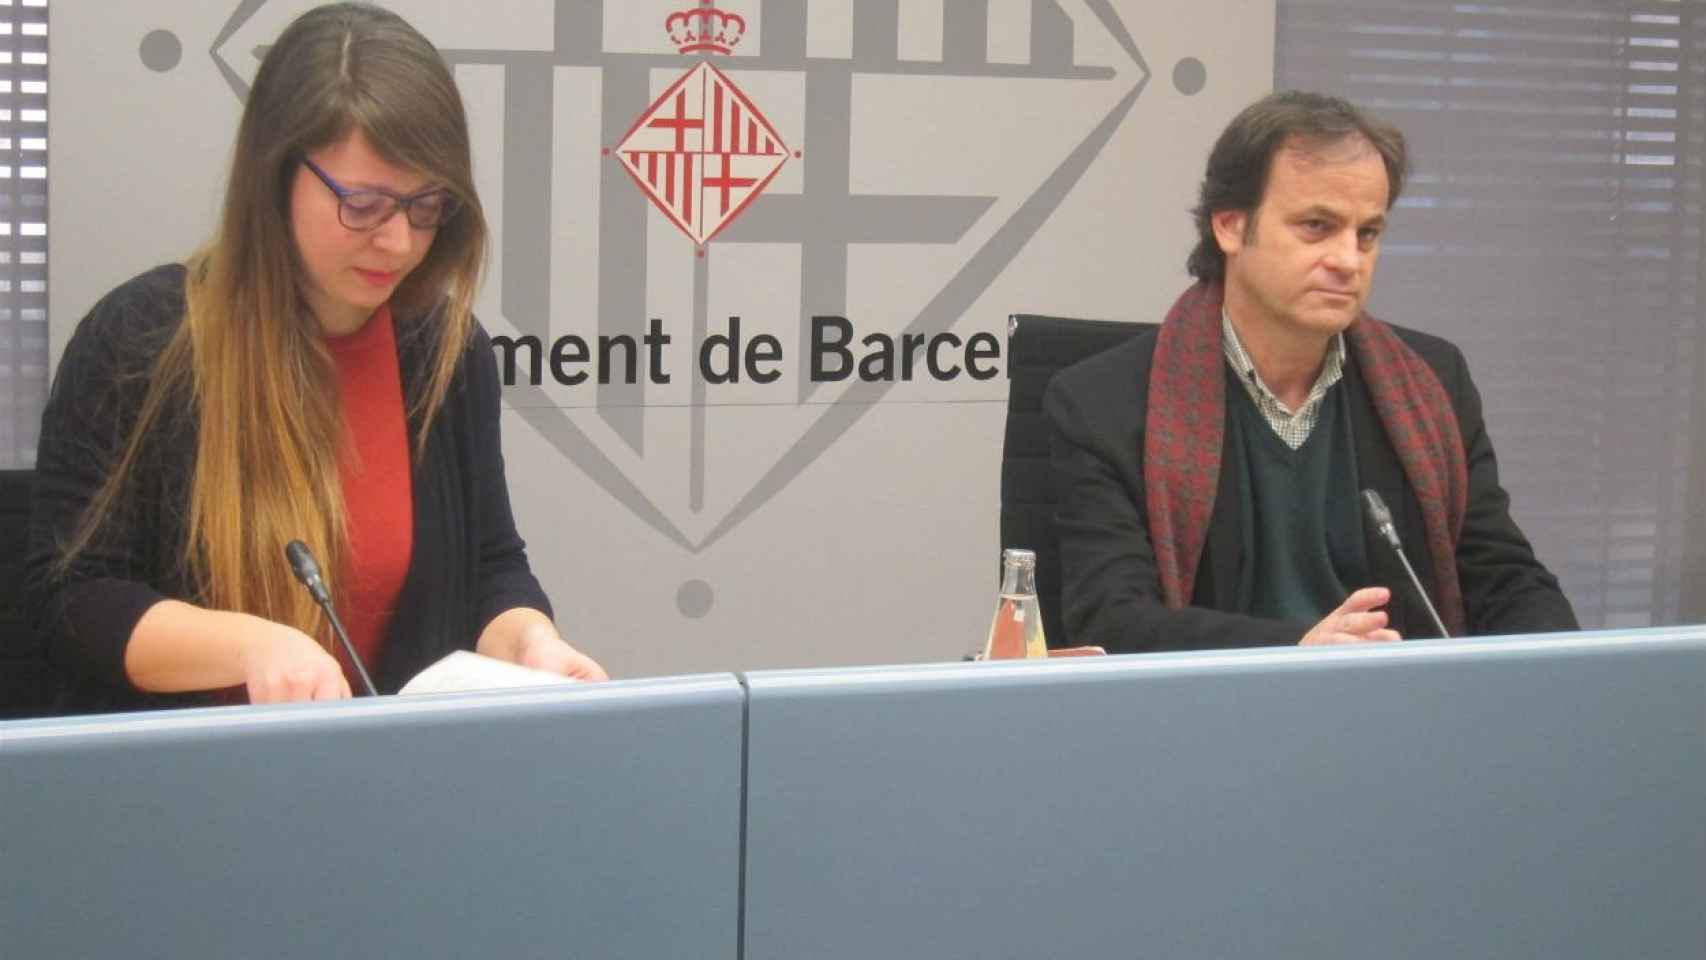 Los tenientes de alcalde Janet Sanz y Jaume Asens en rueda de prensa